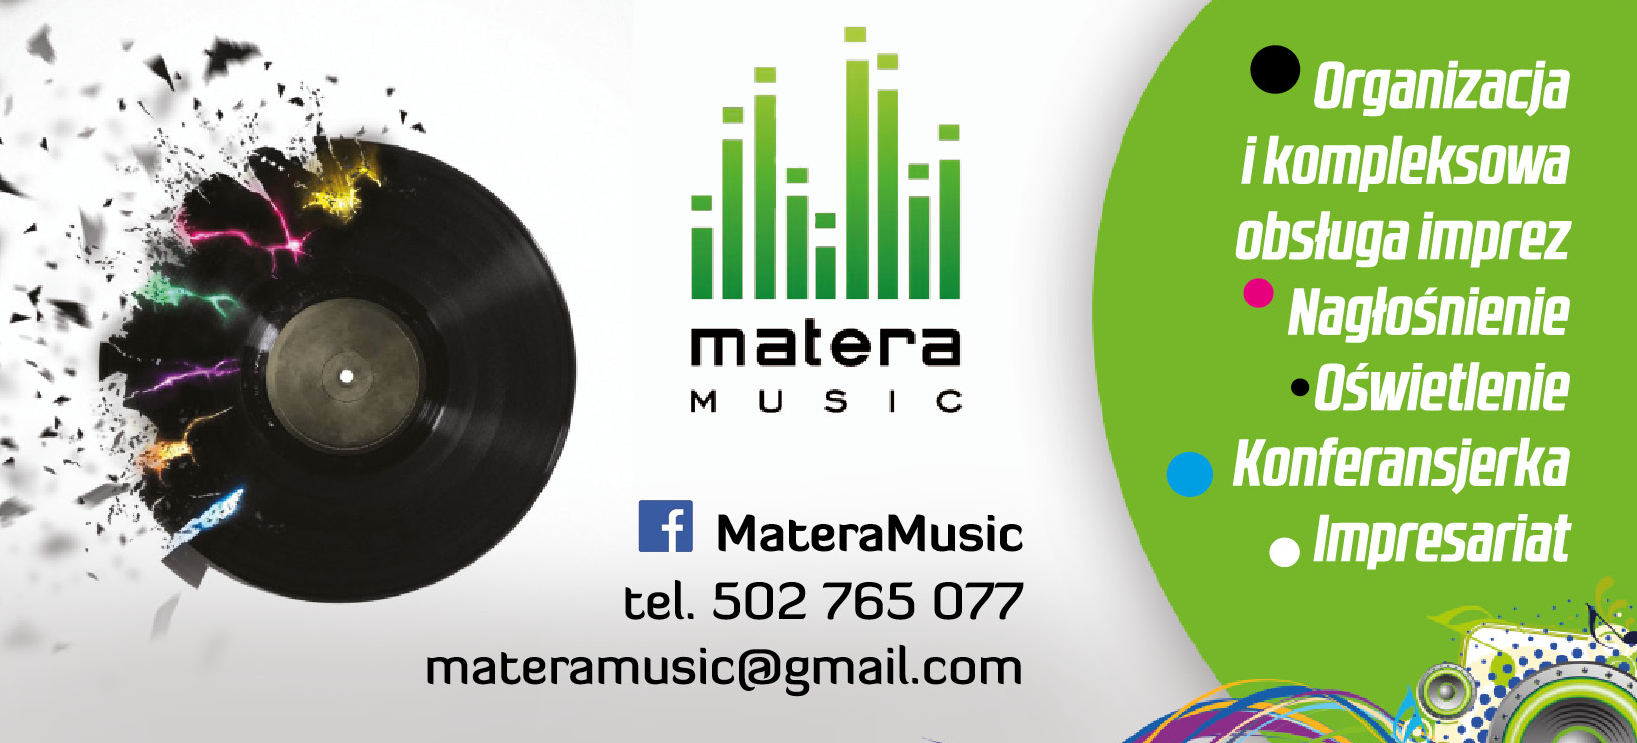 MATERA MUSIC Chełm Organizacja i Kompleksowa Obsługa Imprez / Nagłośnienie / Oświetlenie